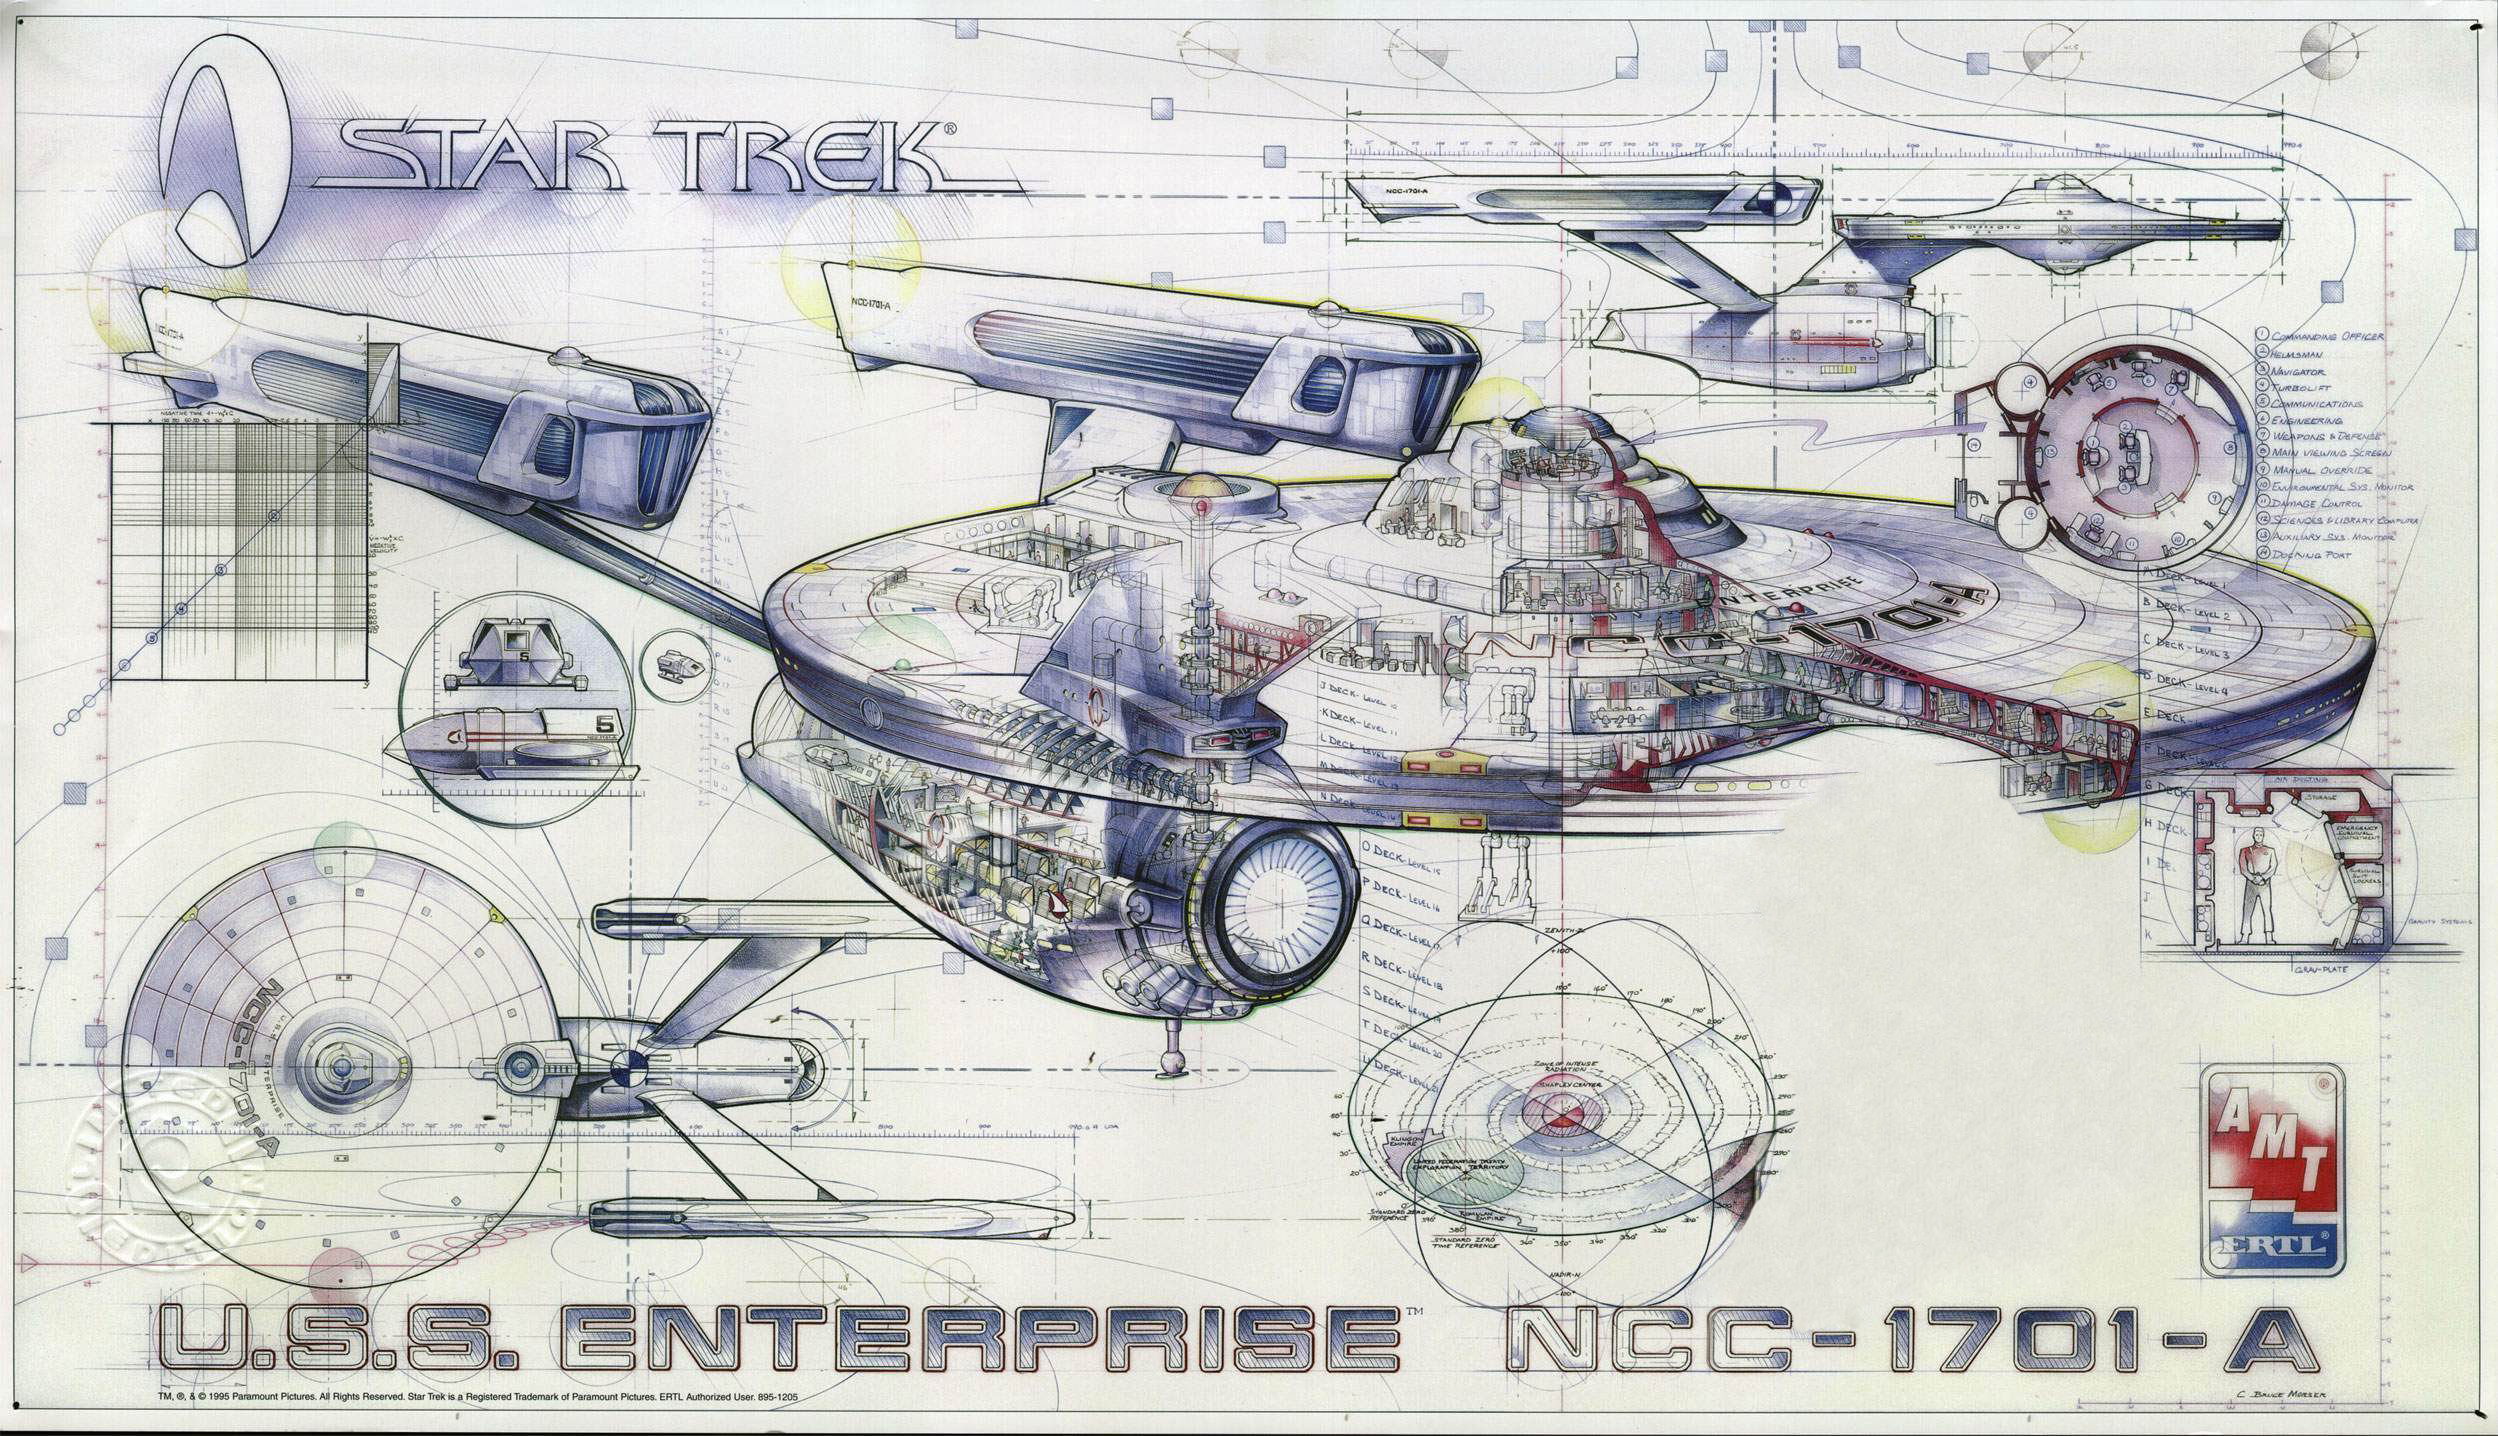 Star Trek Blueprints Uss Enterprise Star Trek Schemat - vrogue.co